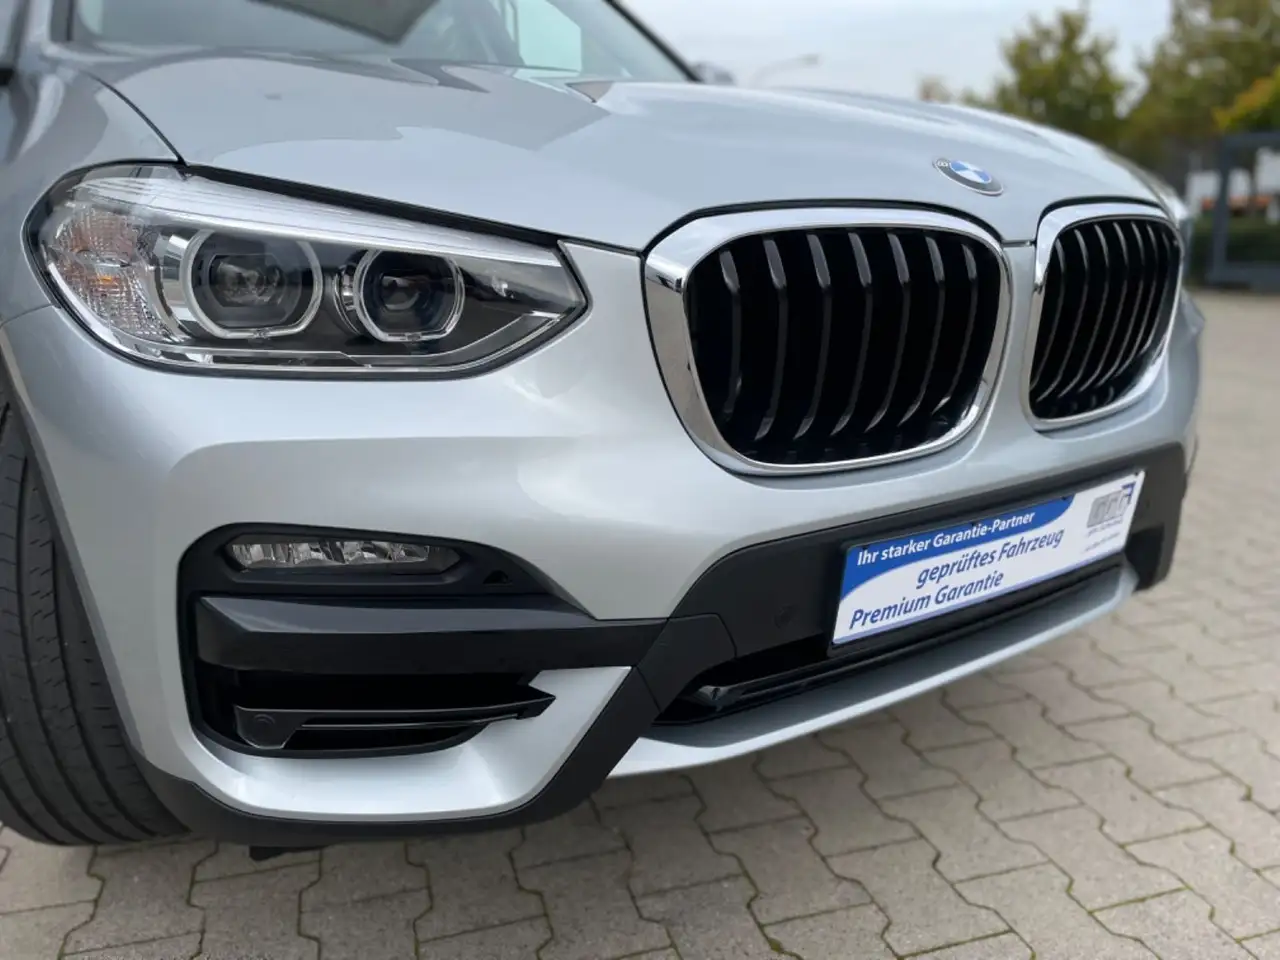 BMW X3 SUV/Geländewagen/Pickup in Silber gebraucht in Osnabrück für € 44.500 